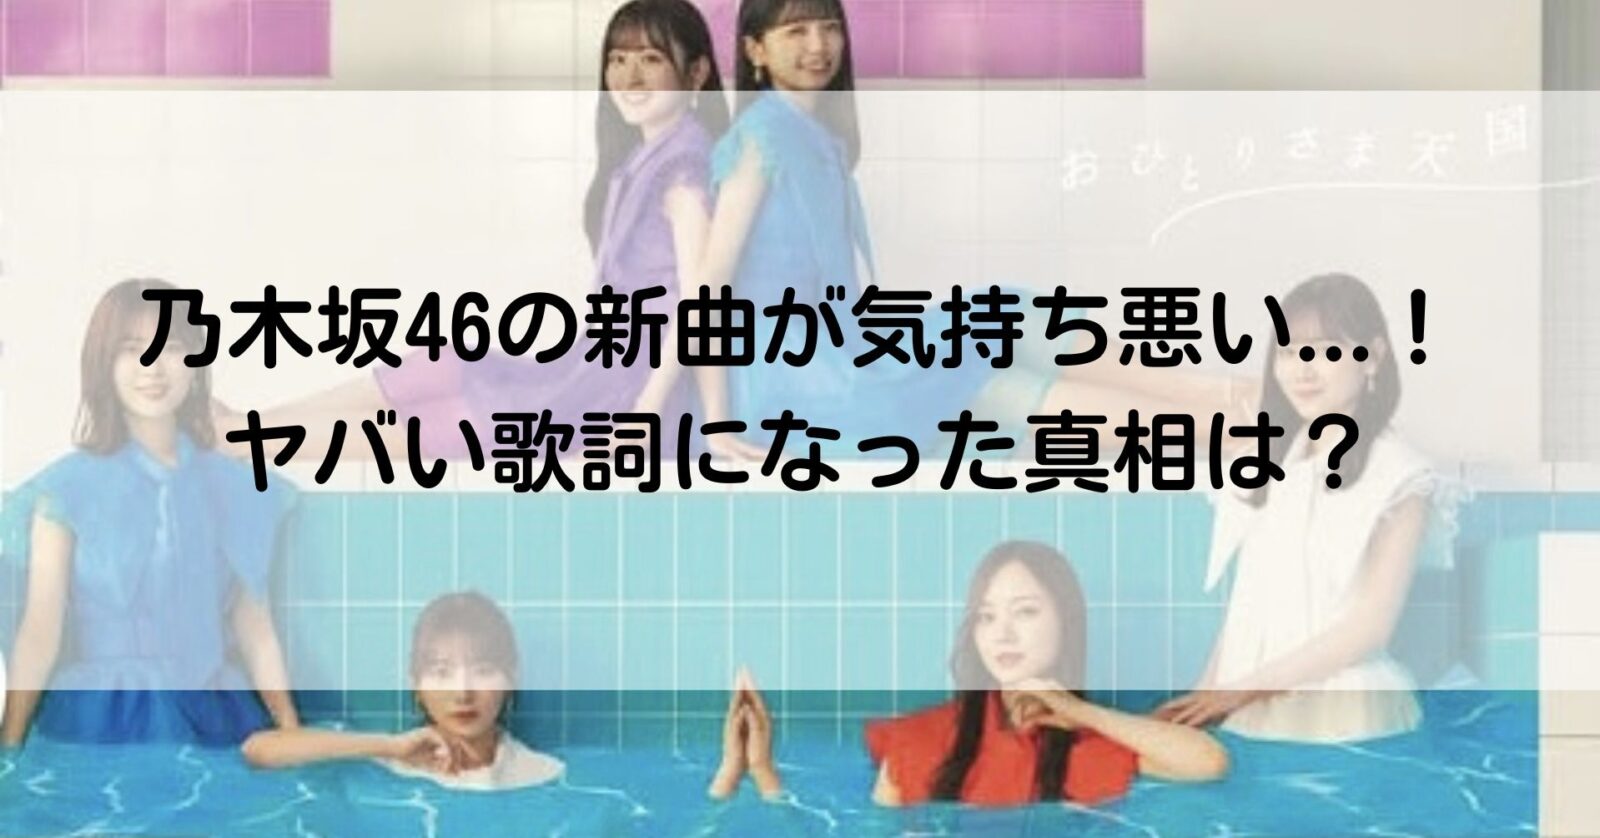 乃木坂46の新曲記事のアイキャッチ画像